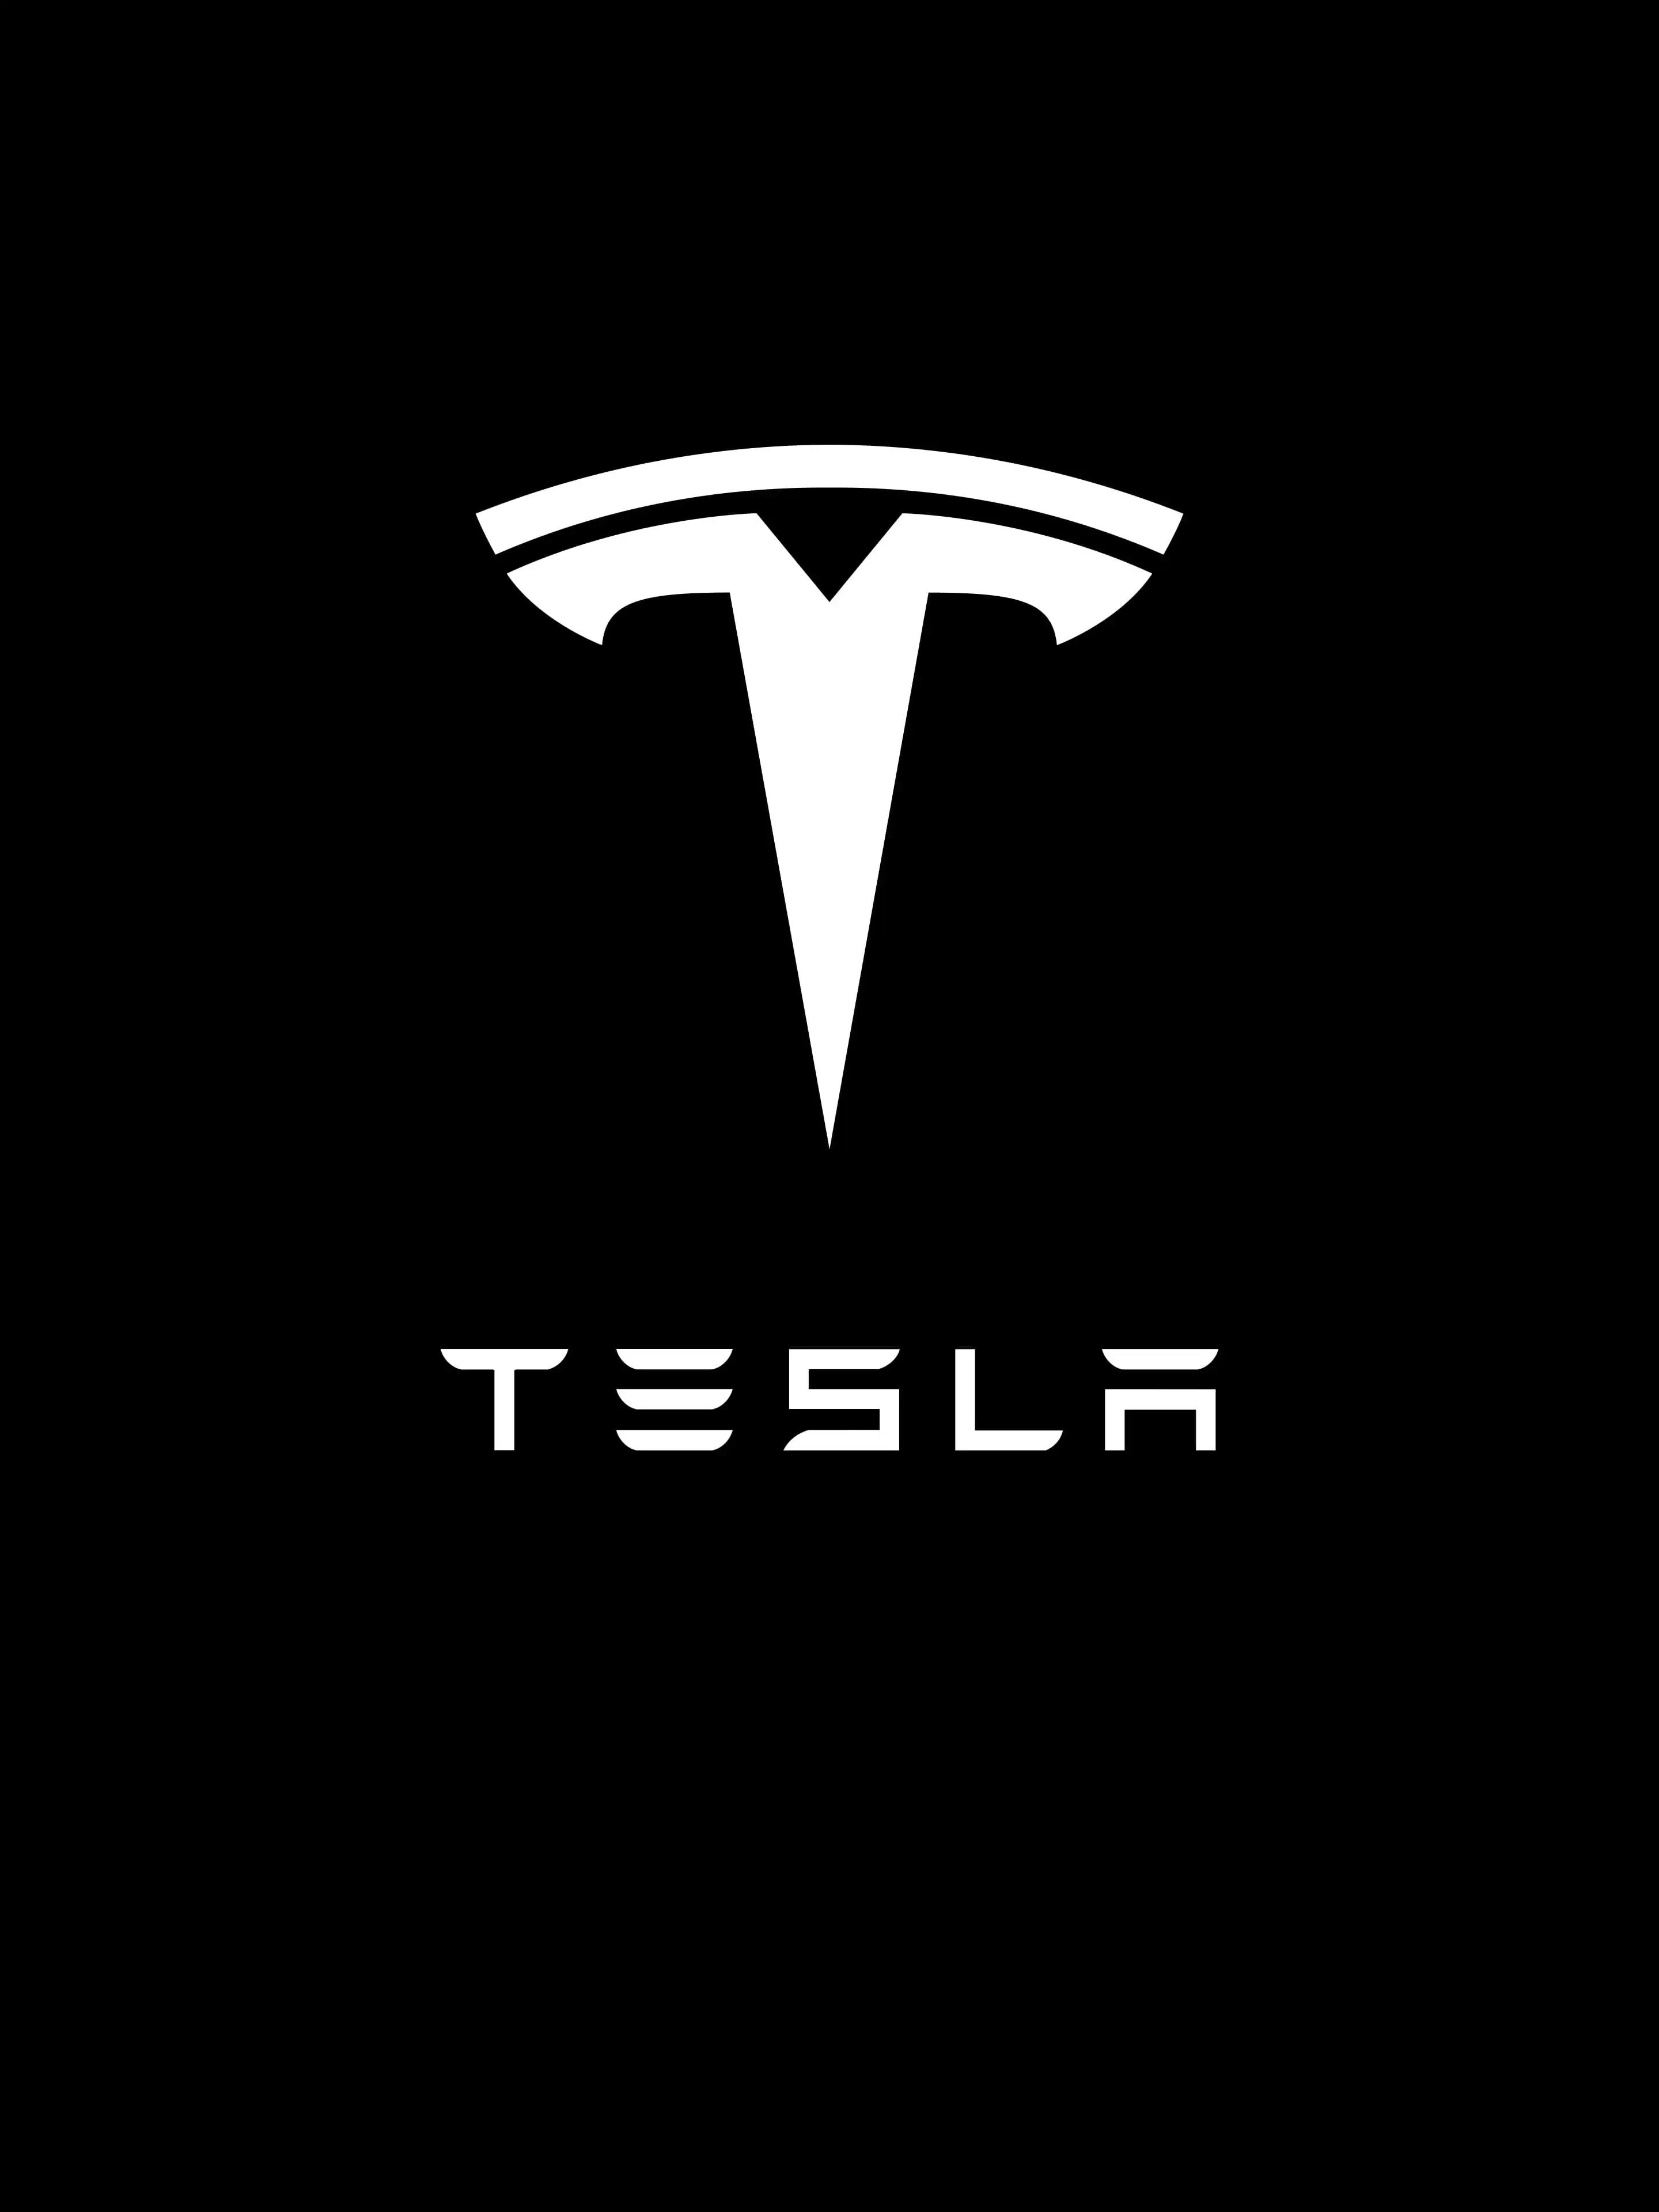  Tesla logo wallpaper   Wallery